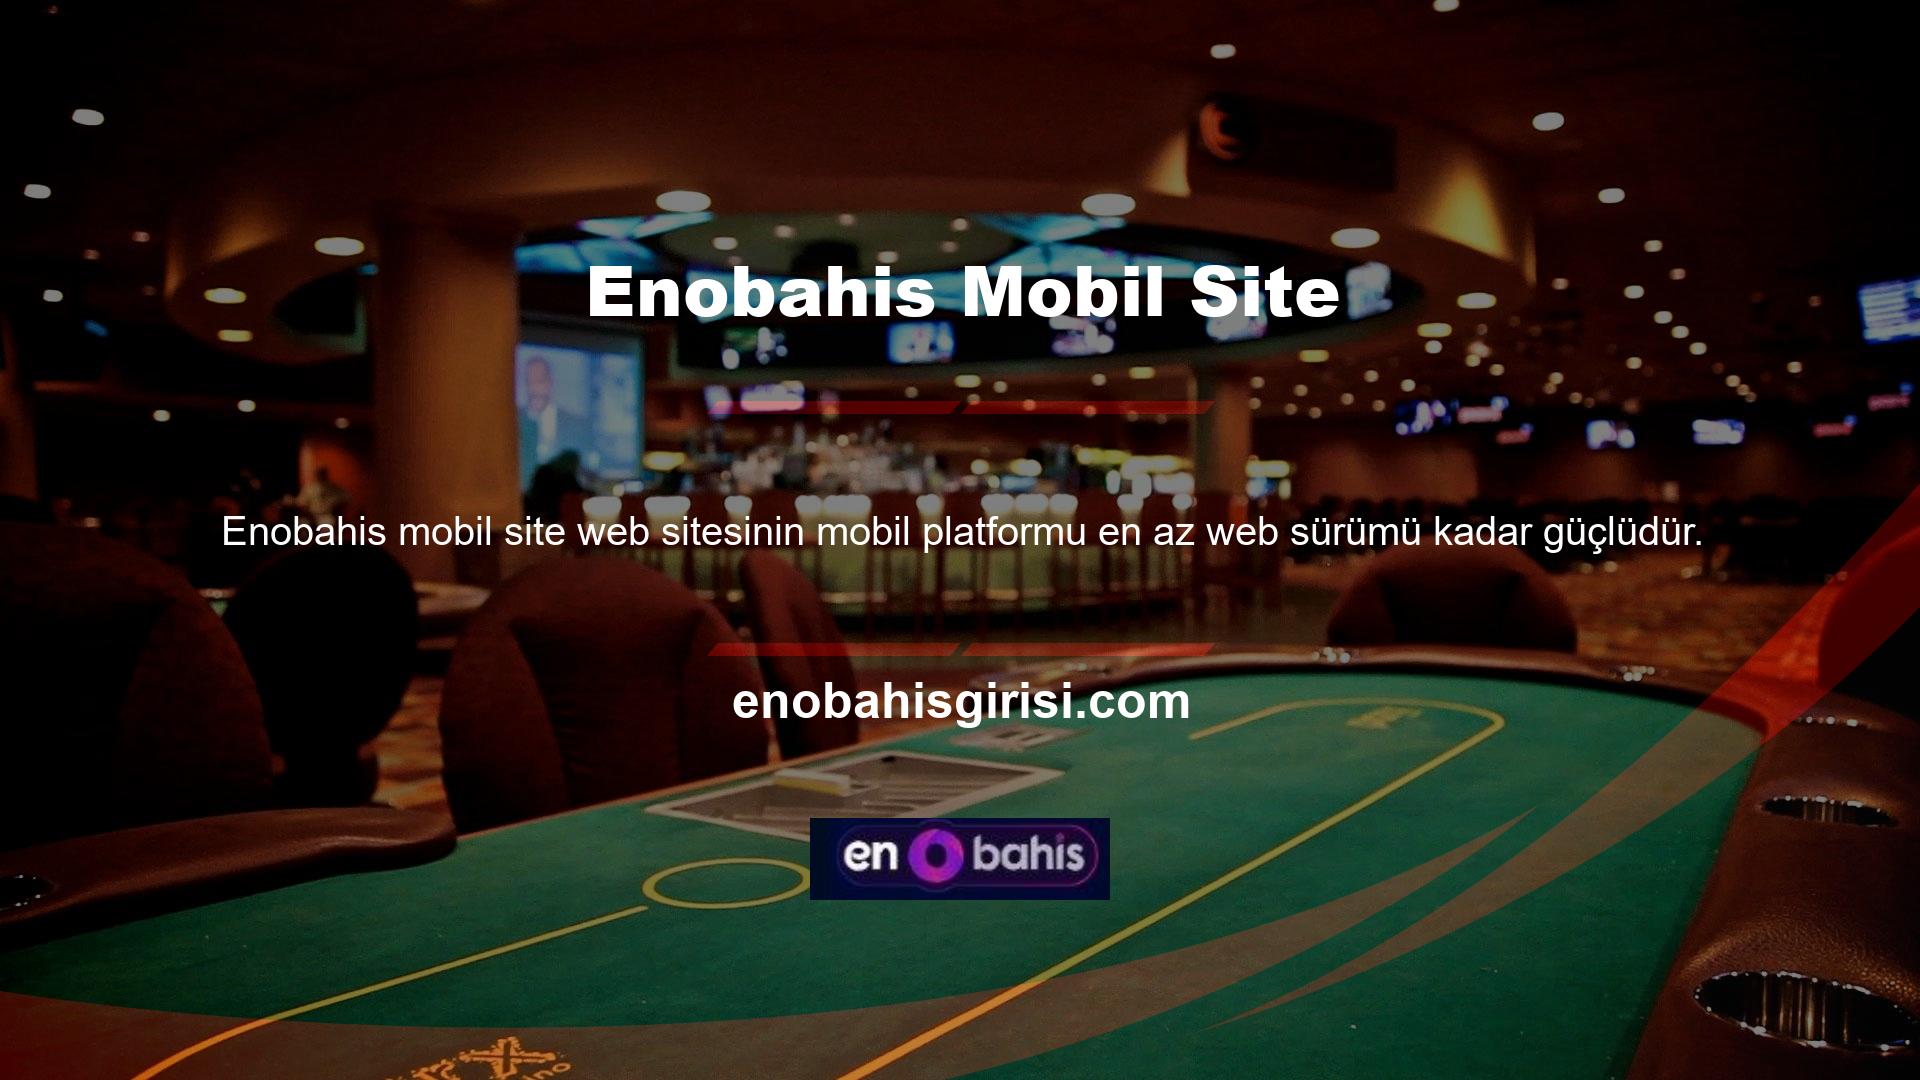 Enobahis hızlı mobil web sitesi ve kullanıcı dostu arayüzü, oyuncuların bahis oynamasını kolaylaştırıyor